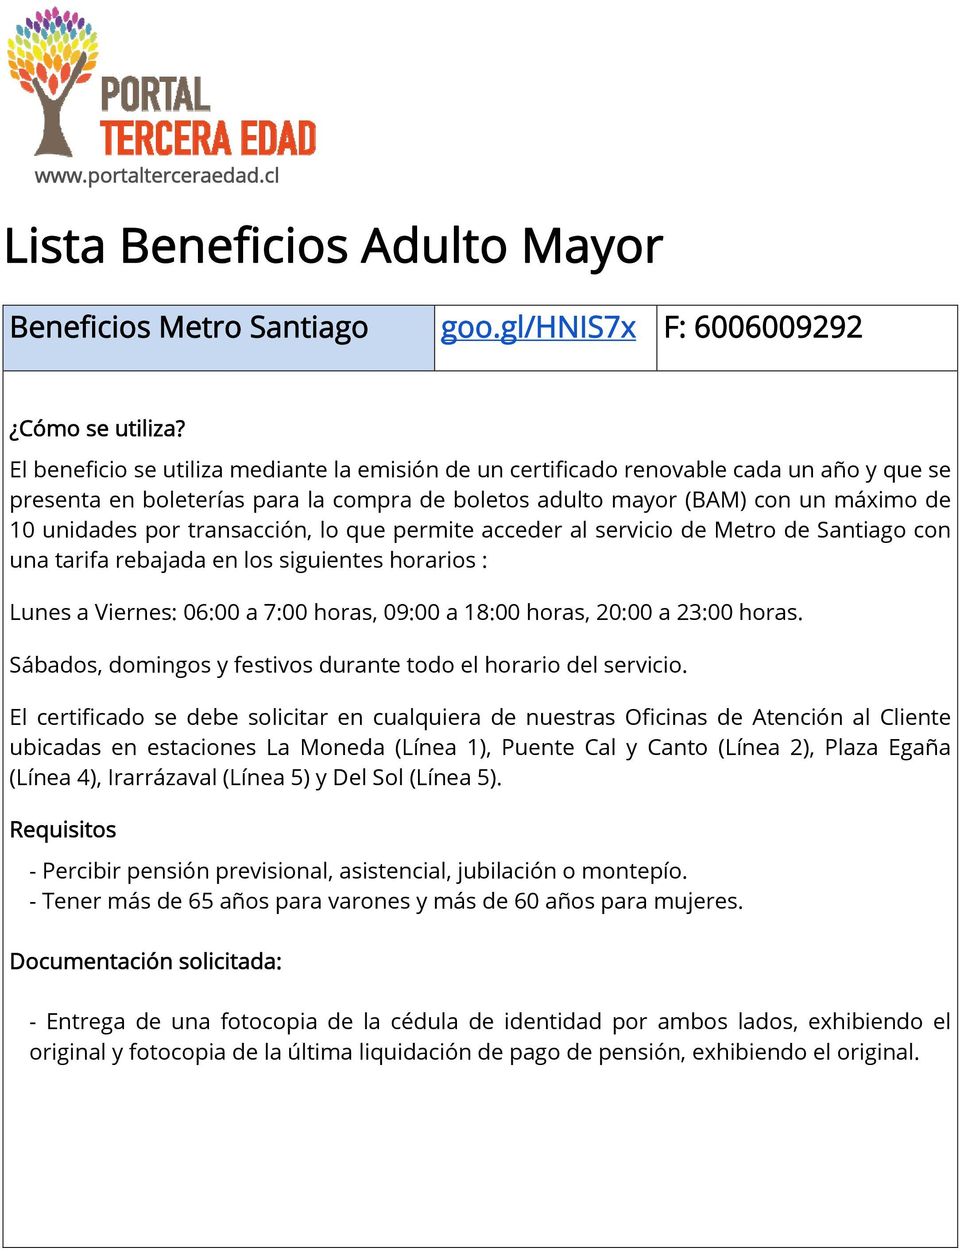 transacción, lo que permite acceder al servicio de Metro de Santiago con una tarifa rebajada en los siguientes horarios : Lunes a Viernes: 06:00 a 7:00 horas, 09:00 a 18:00 horas, 20:00 a 23:00 horas.